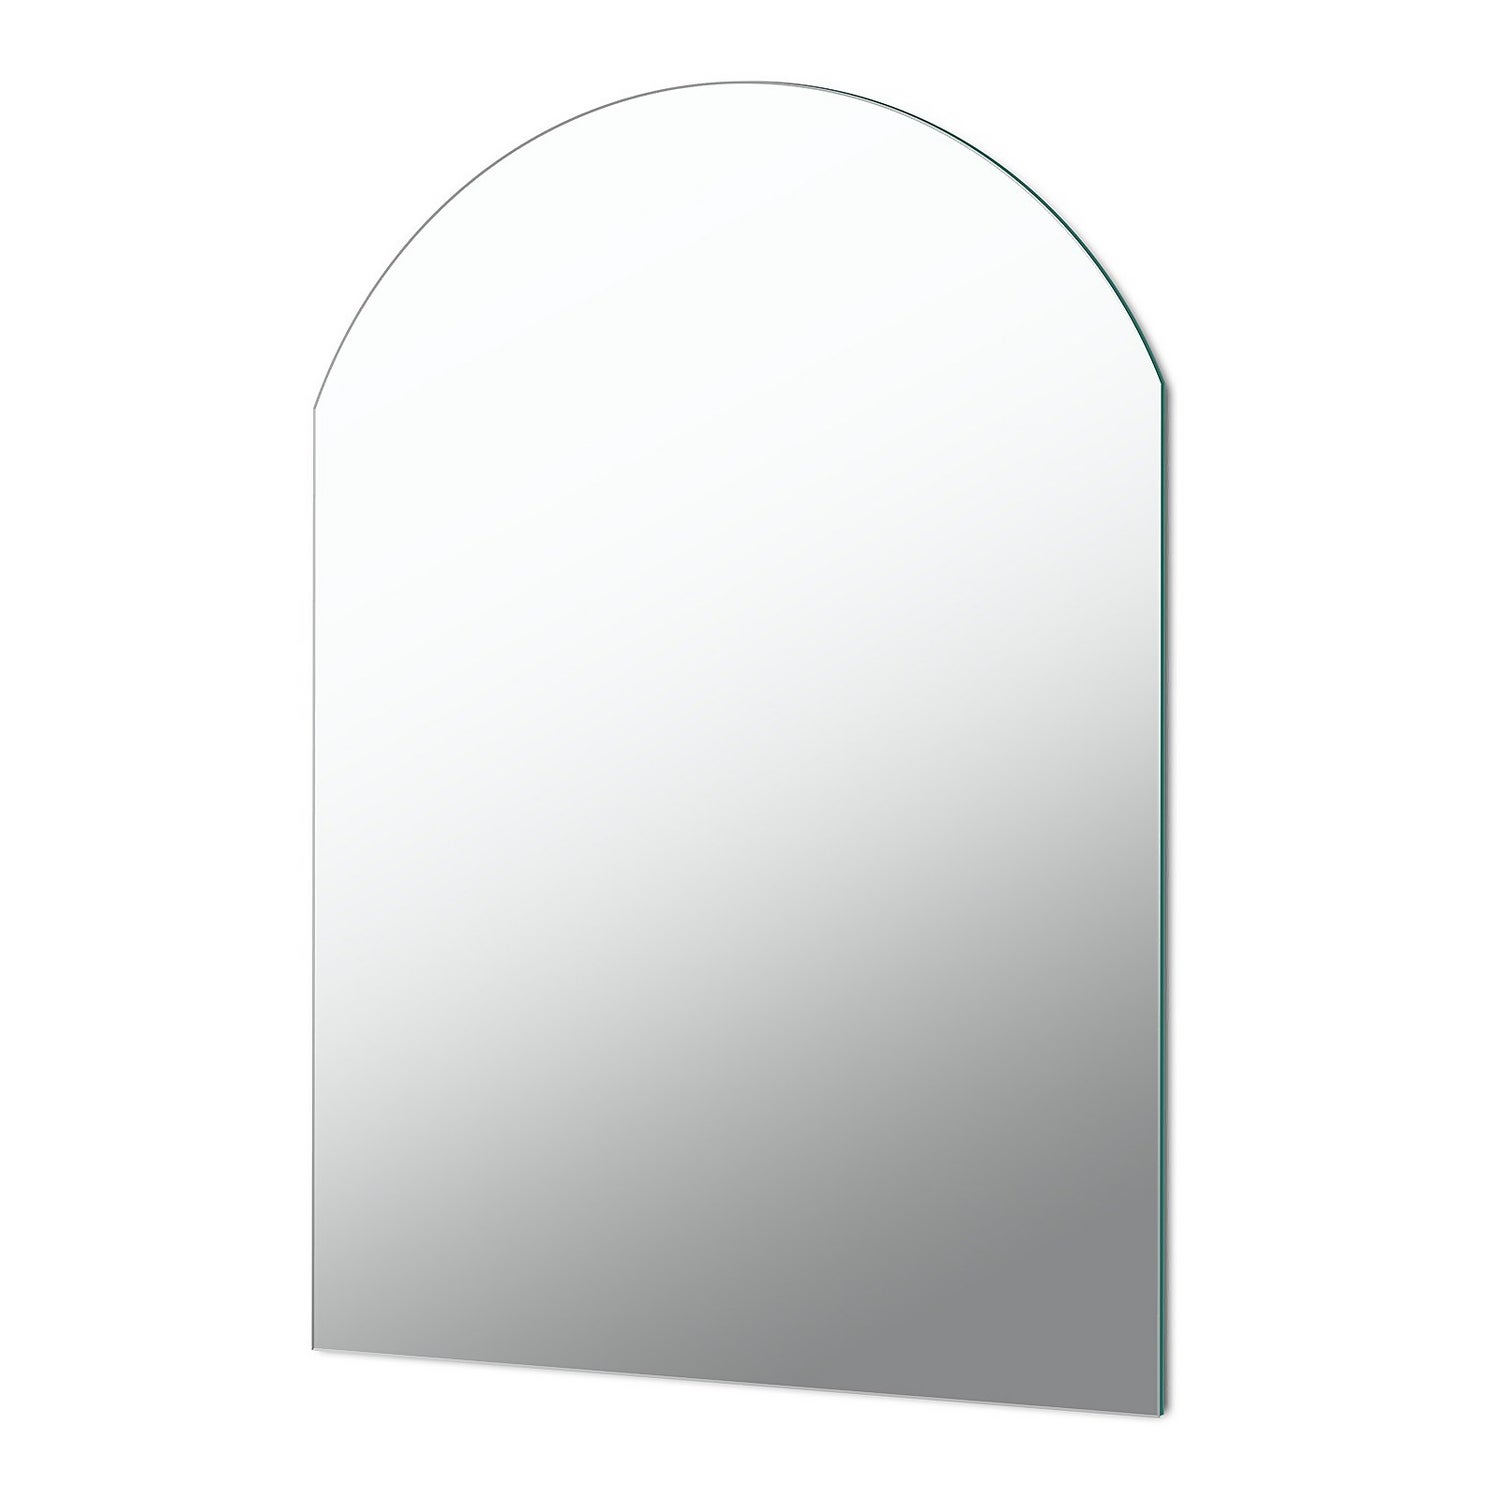 Arched Wall Mounted Bathroom Mirror - 50x79cm